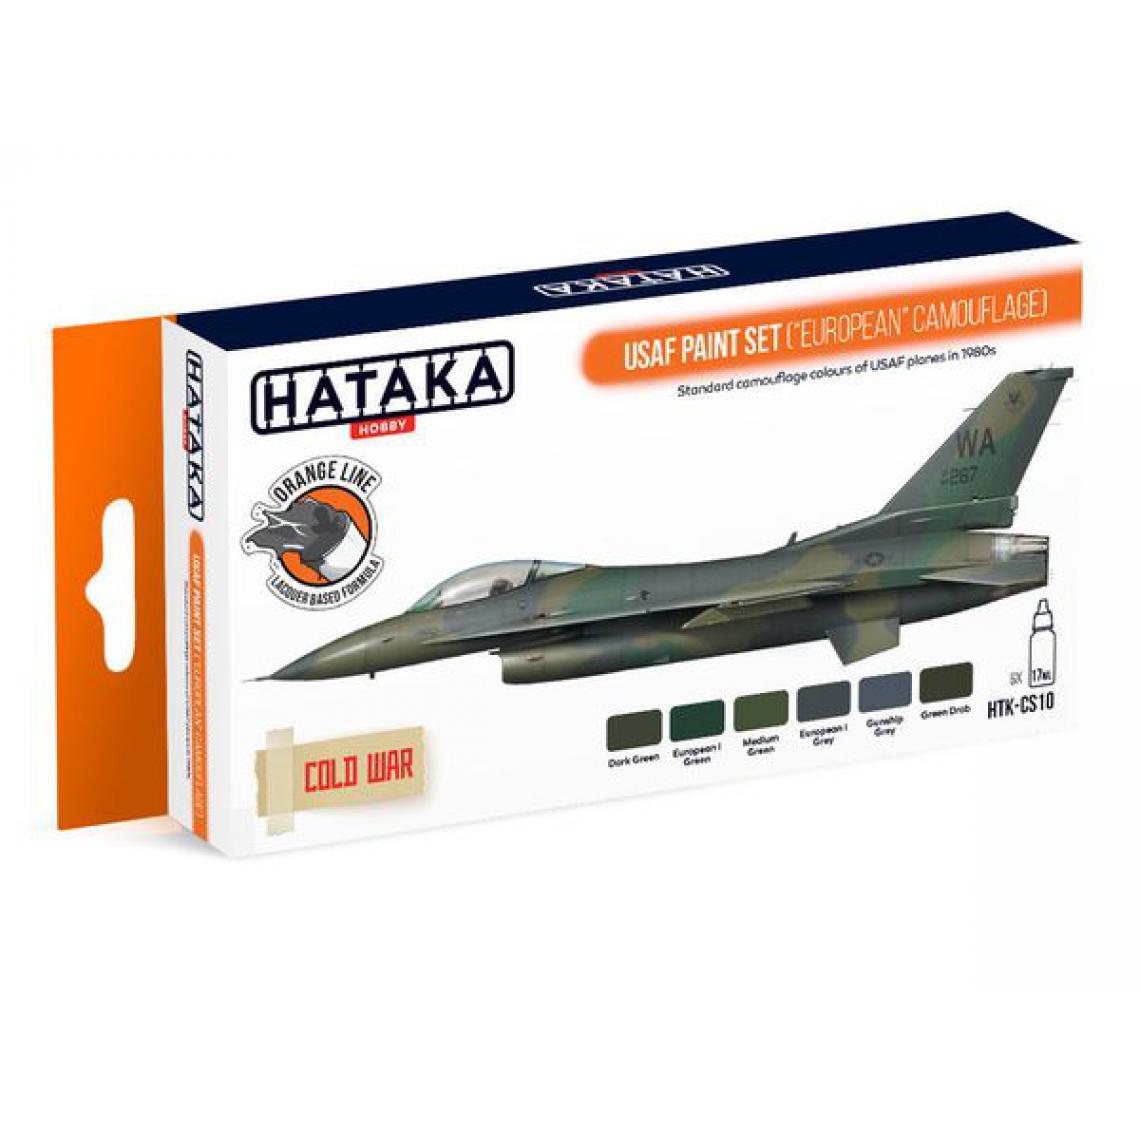 Hataka - Orange Line Set(6 pcs) USAF Paint Set ("European" Camouflage) - HATAKA - Accessoires et pièces